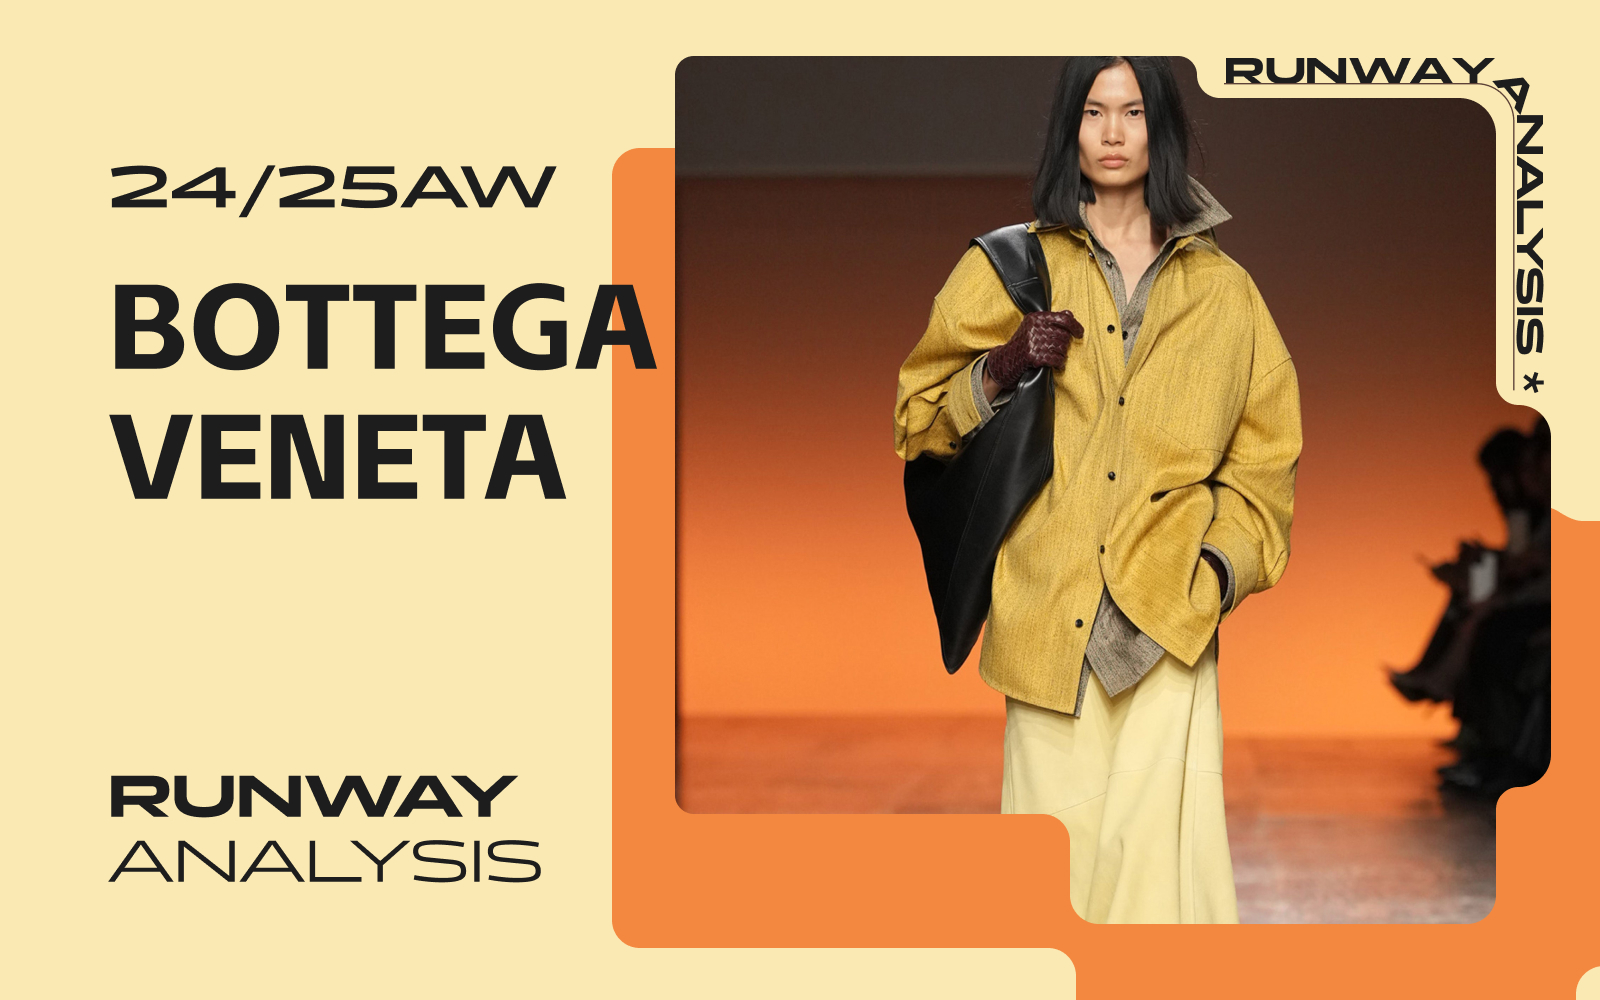 Desert Journey -- The Women's Runway Analysis of Bottega Veneta